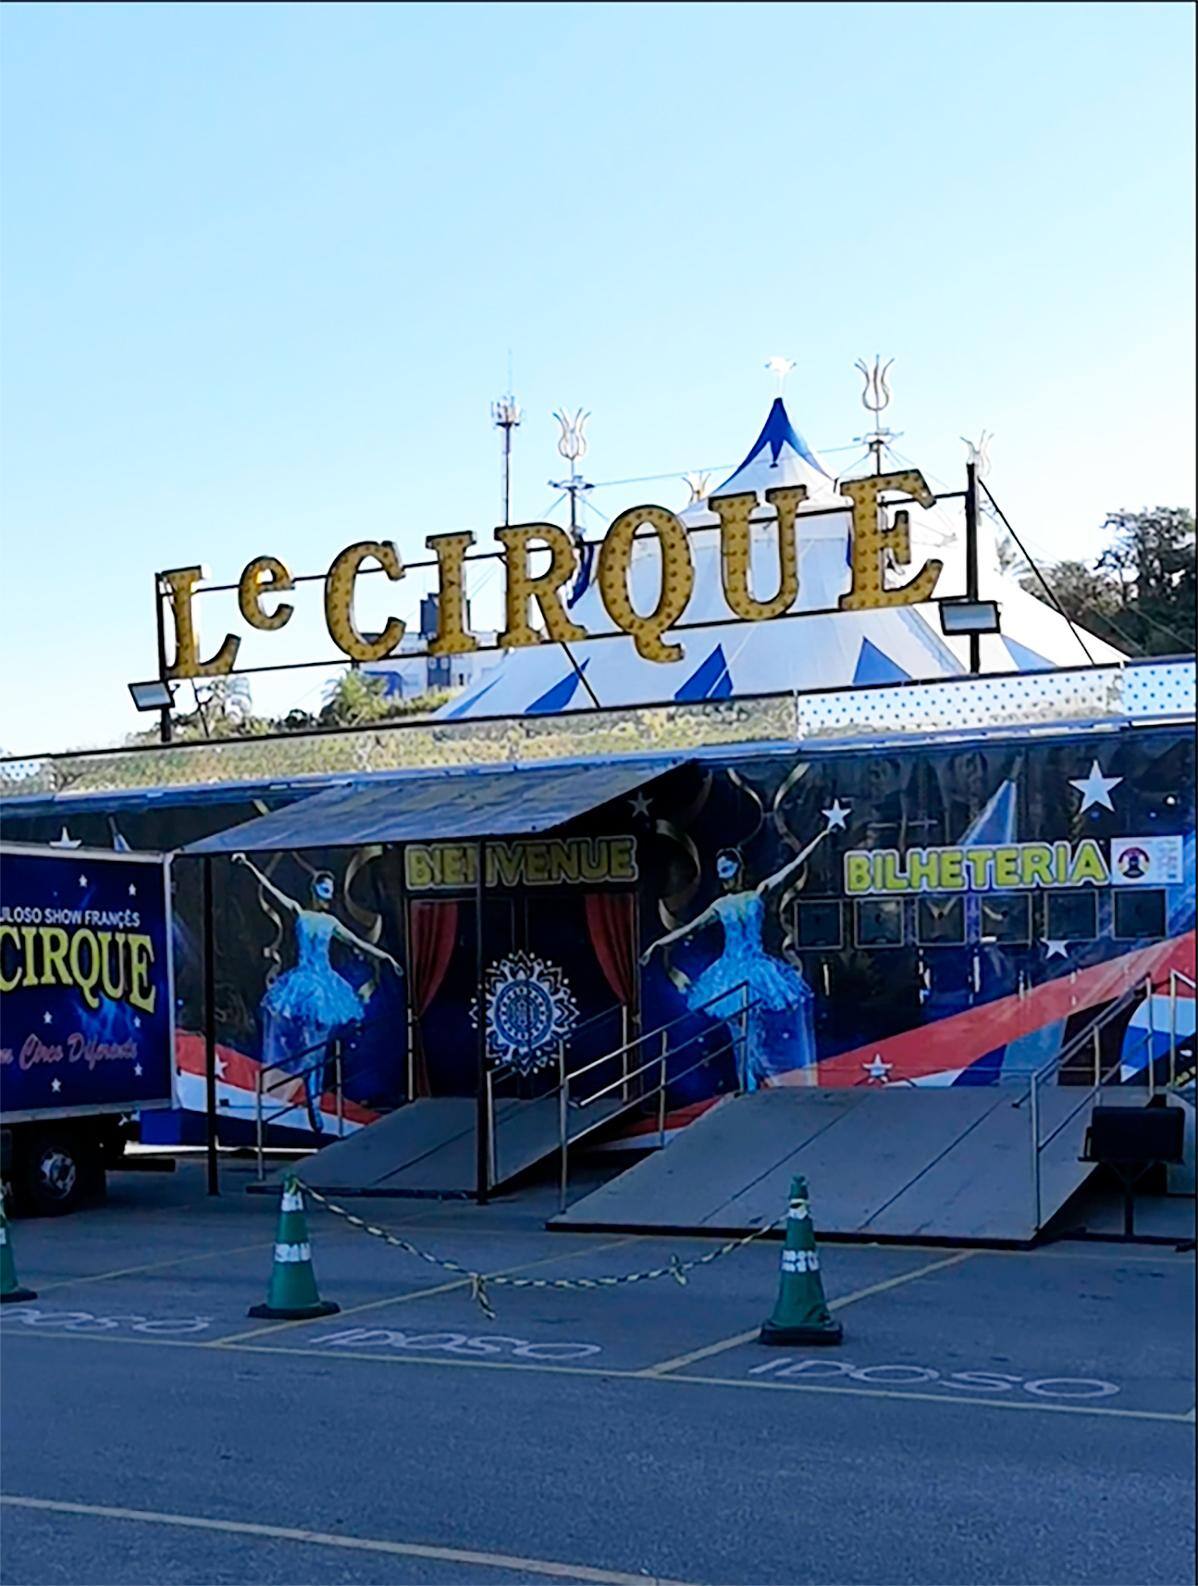 Município é o segundo no país a receber a nova atração do circo francês; primeiro foi Belo Horizonte, no início do ano